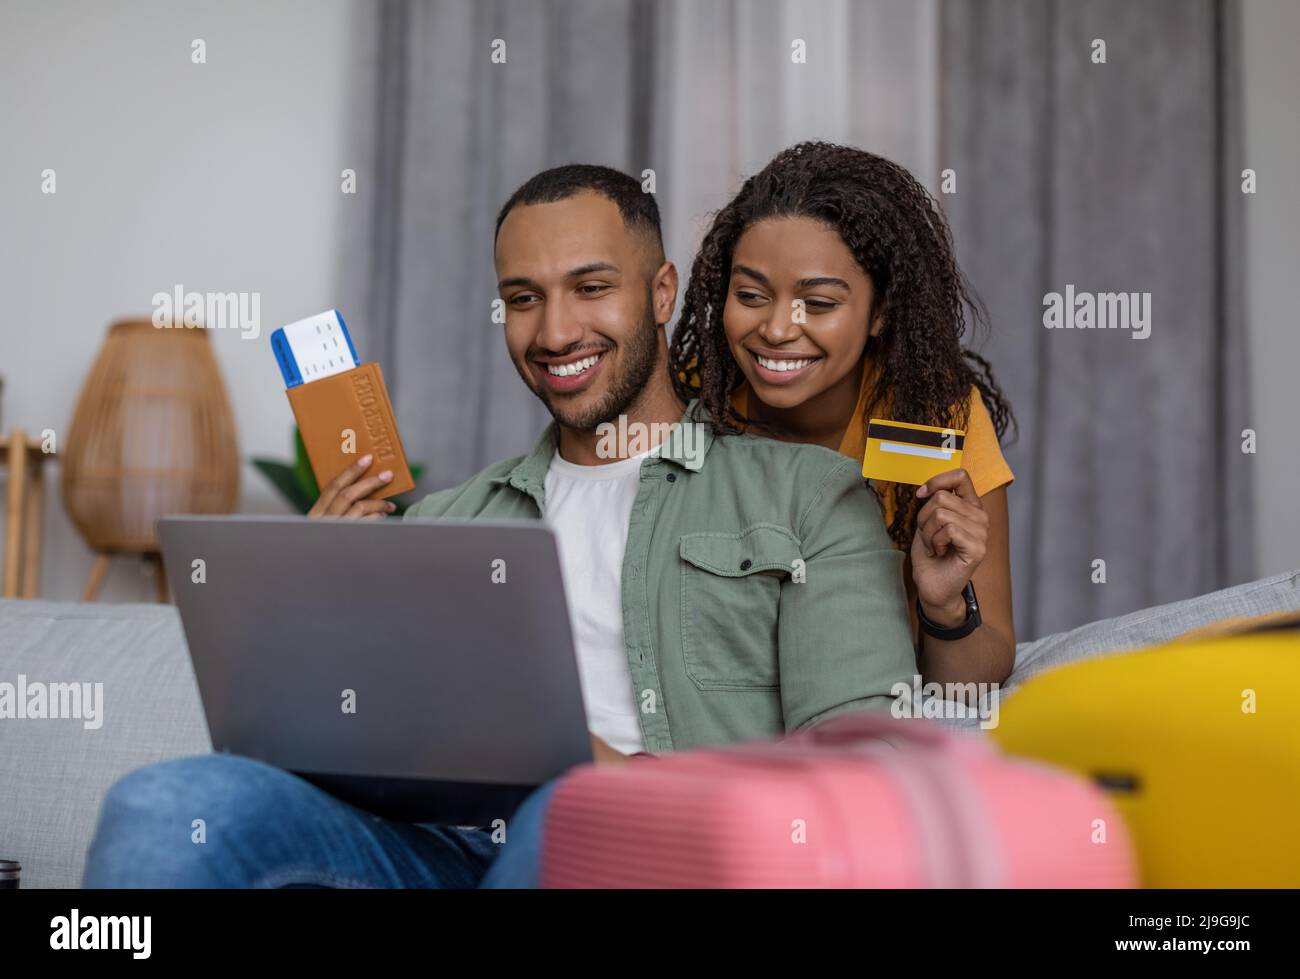 Un heureux couple afro-américain utilisant un ordinateur portable et réserver un hôtel avec une carte de crédit, assis avec des valises, prêt à partir Banque D'Images